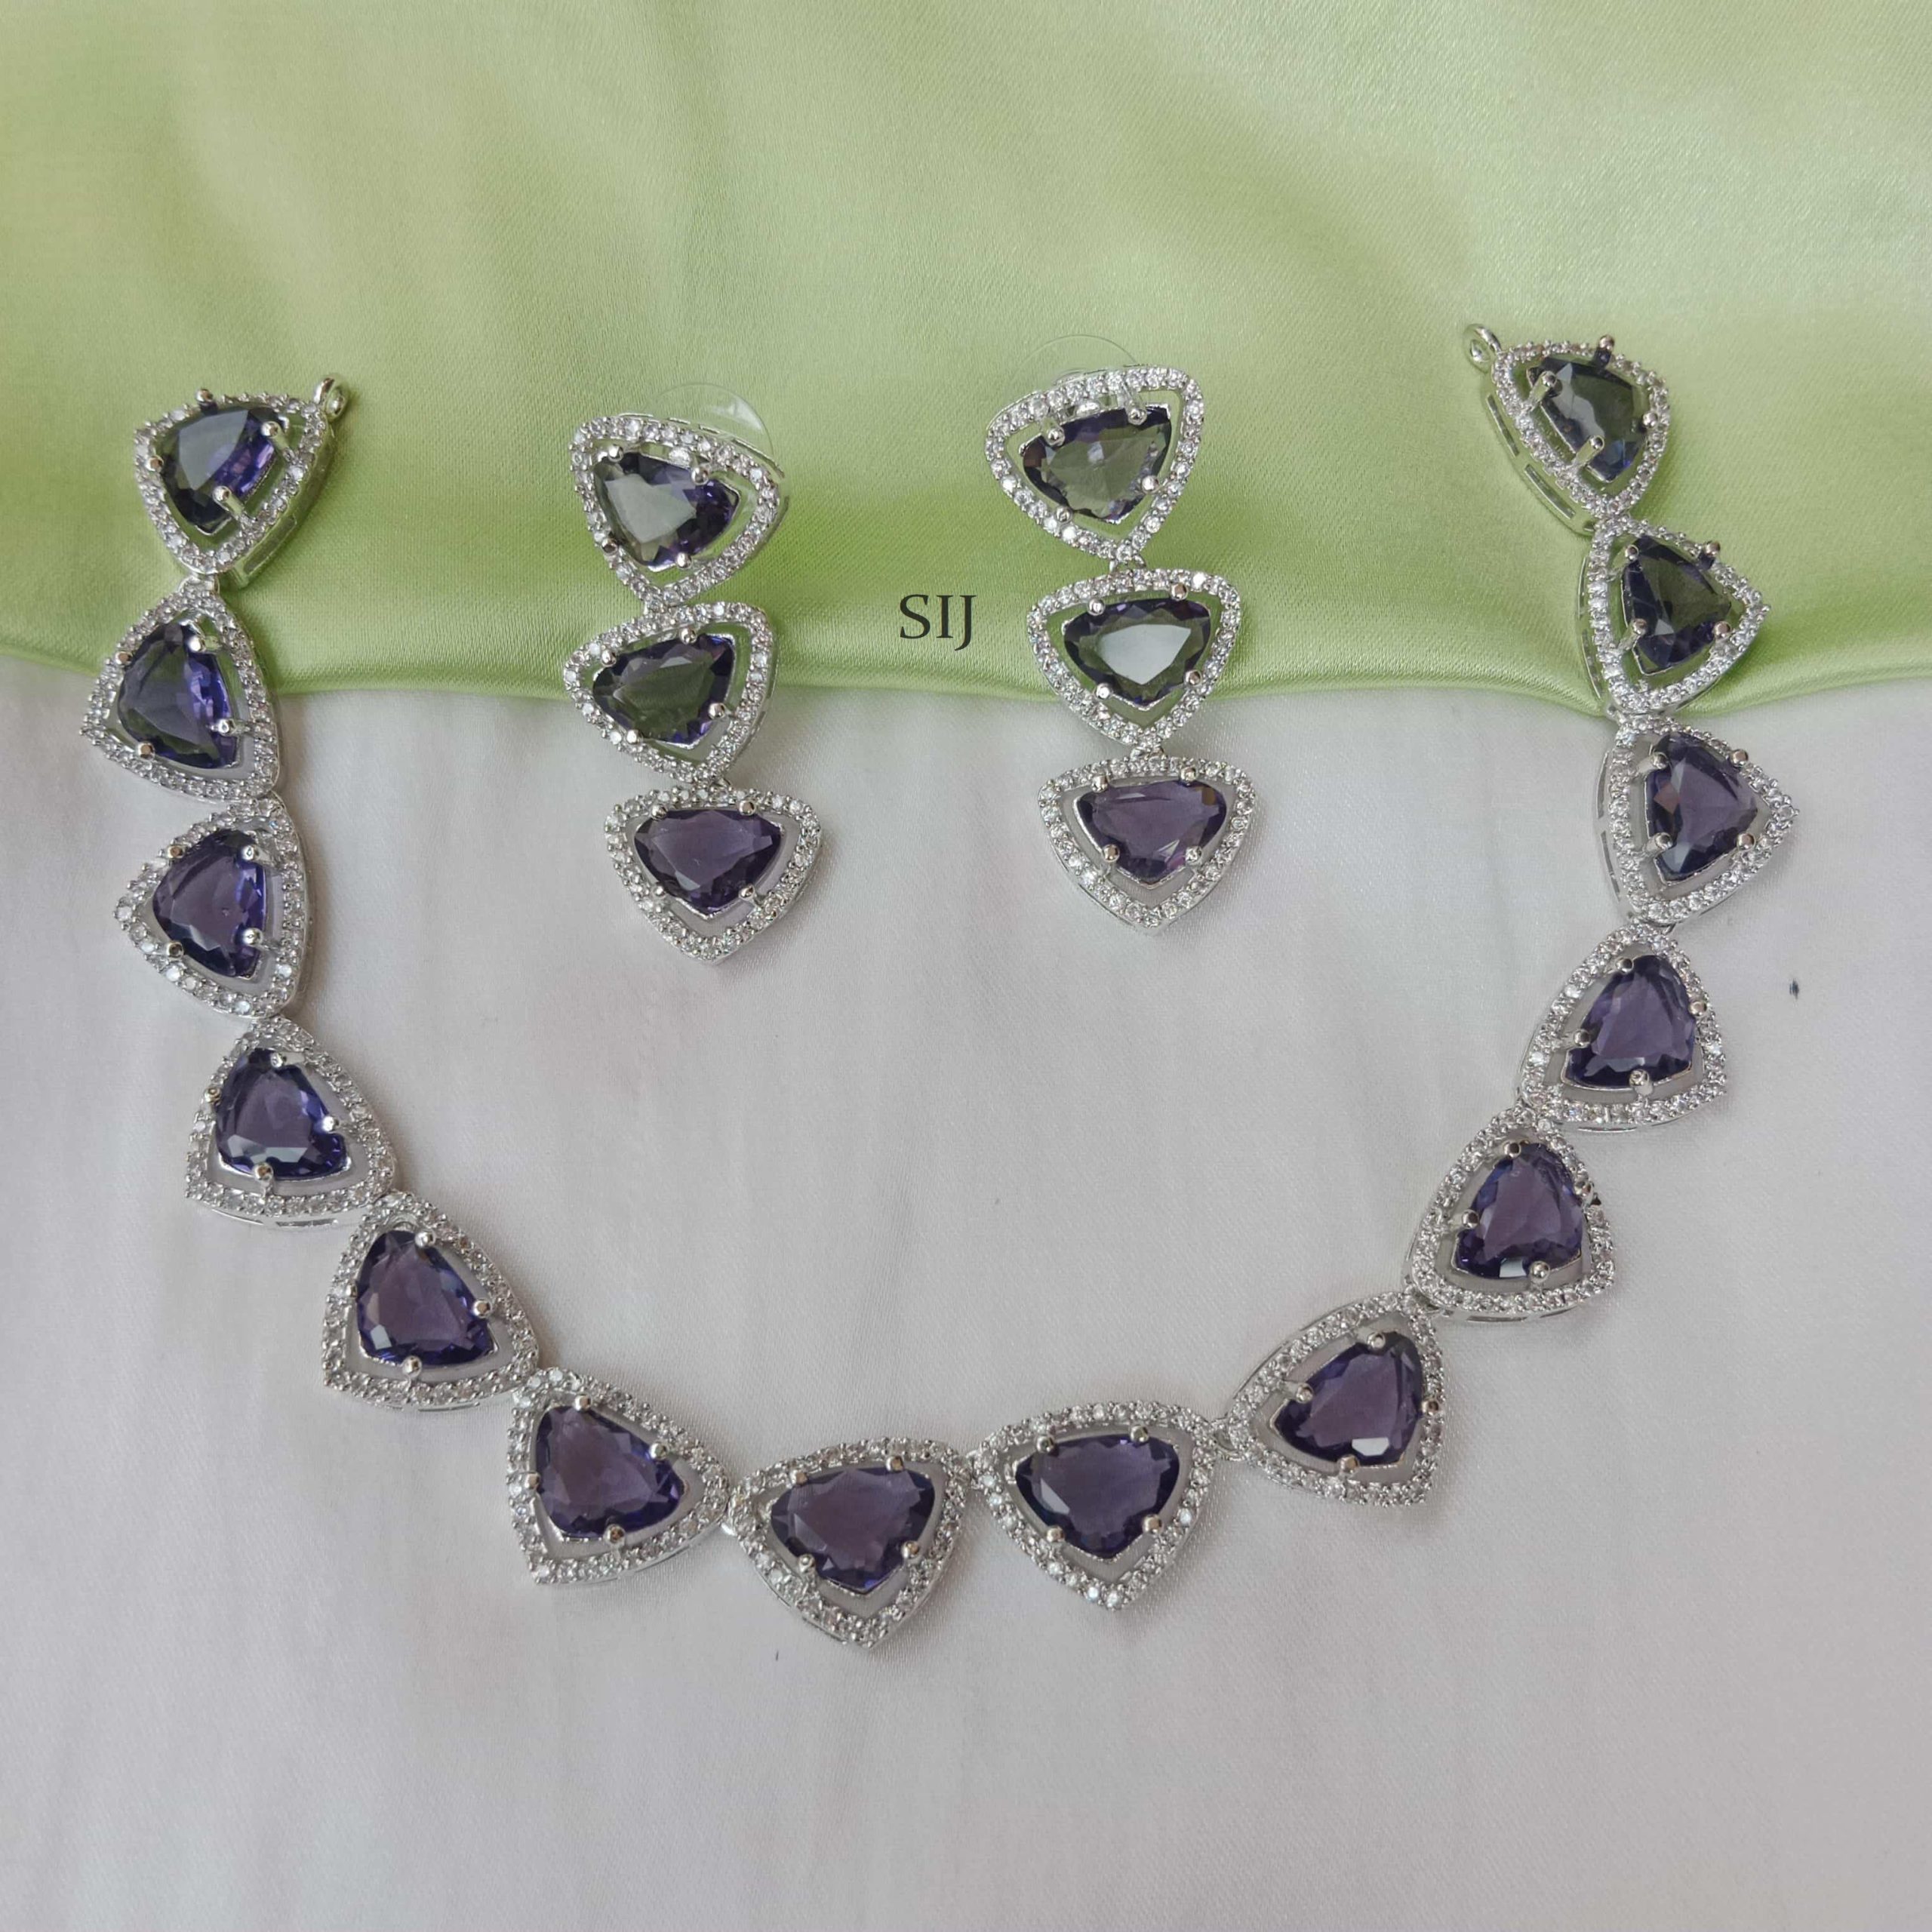 Attractive Triangle Design Purple Stones Necklace-